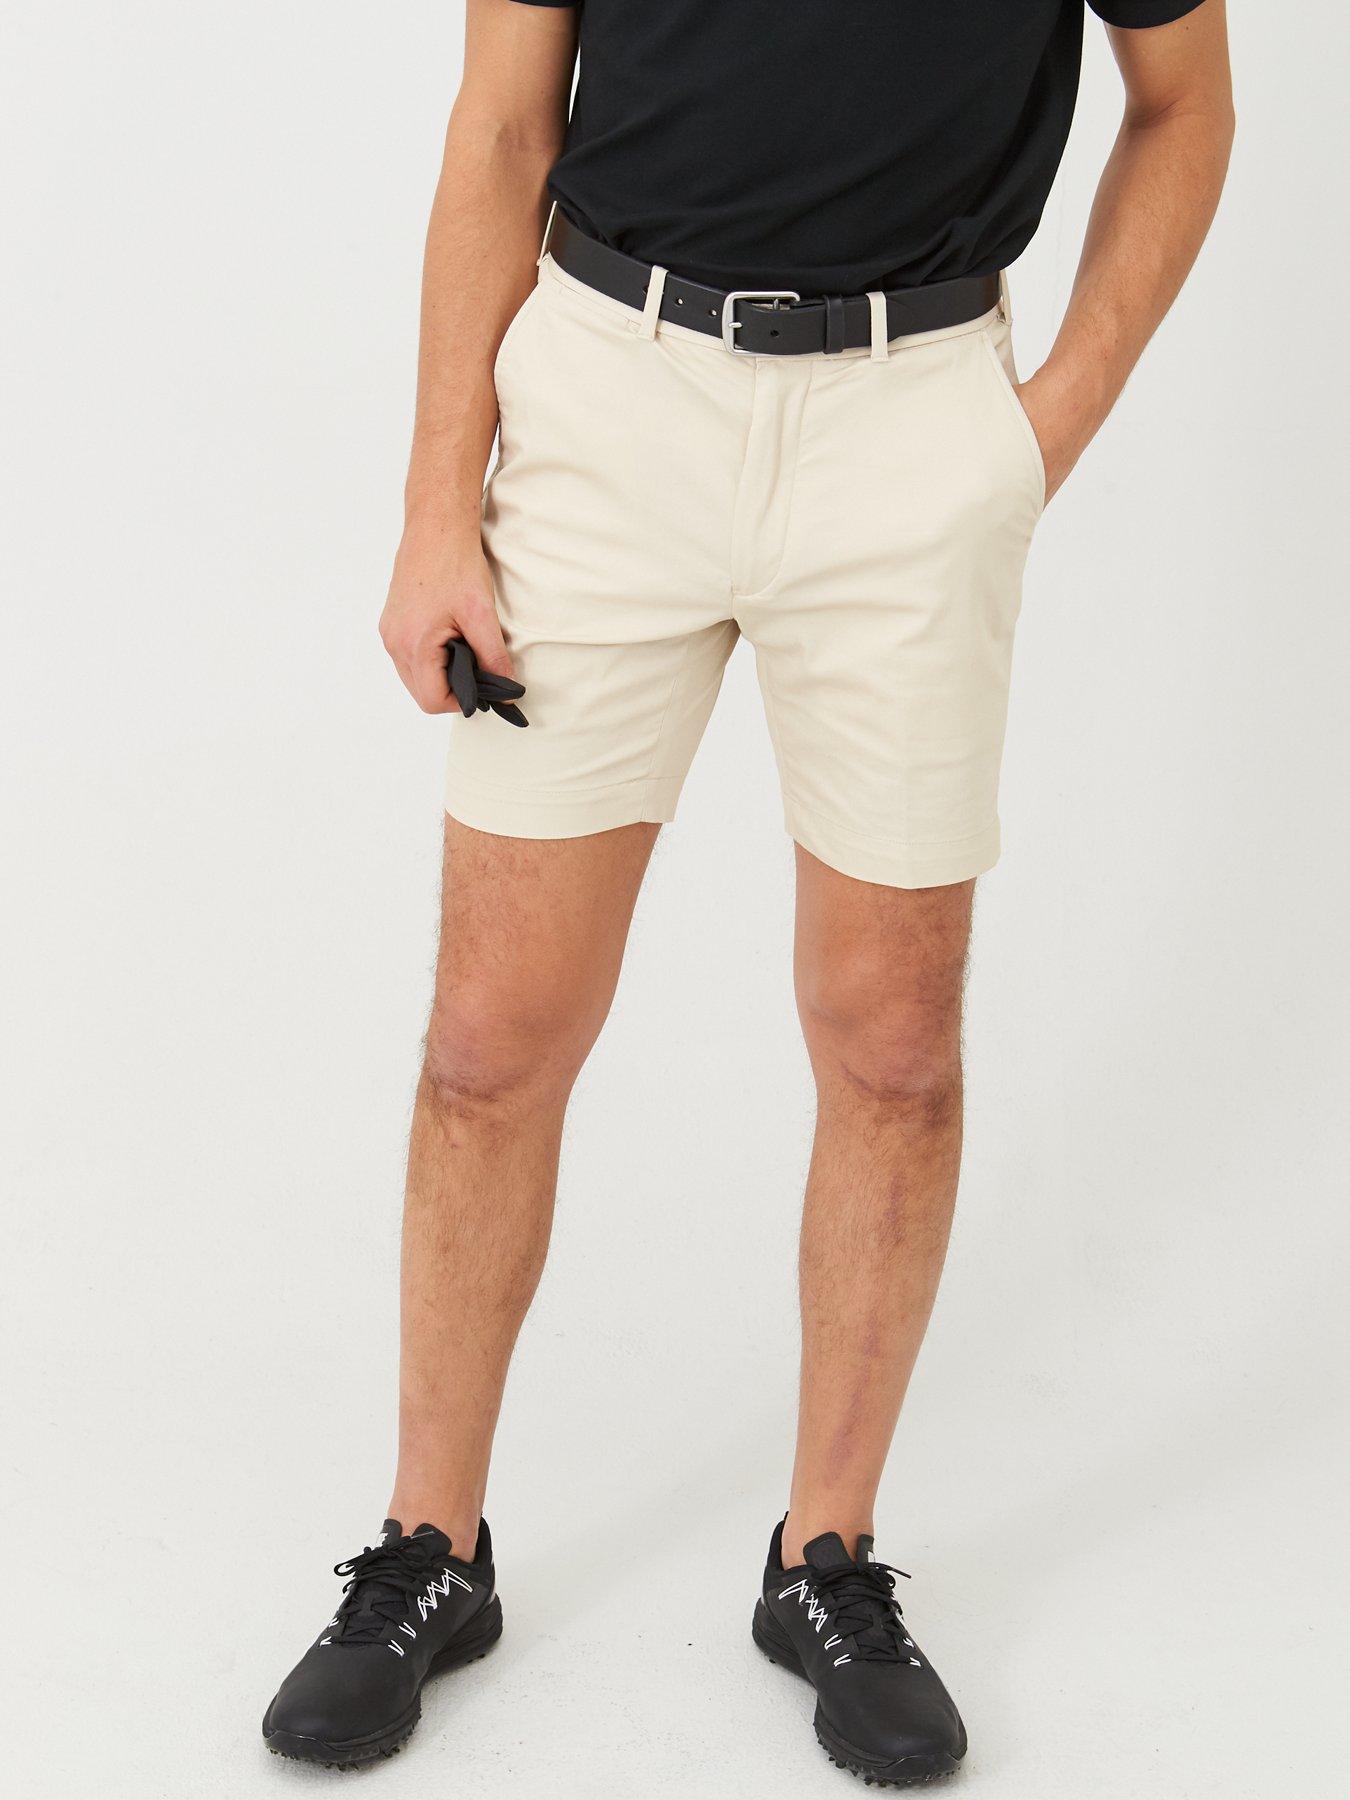 polo ralph lauren golf shorts